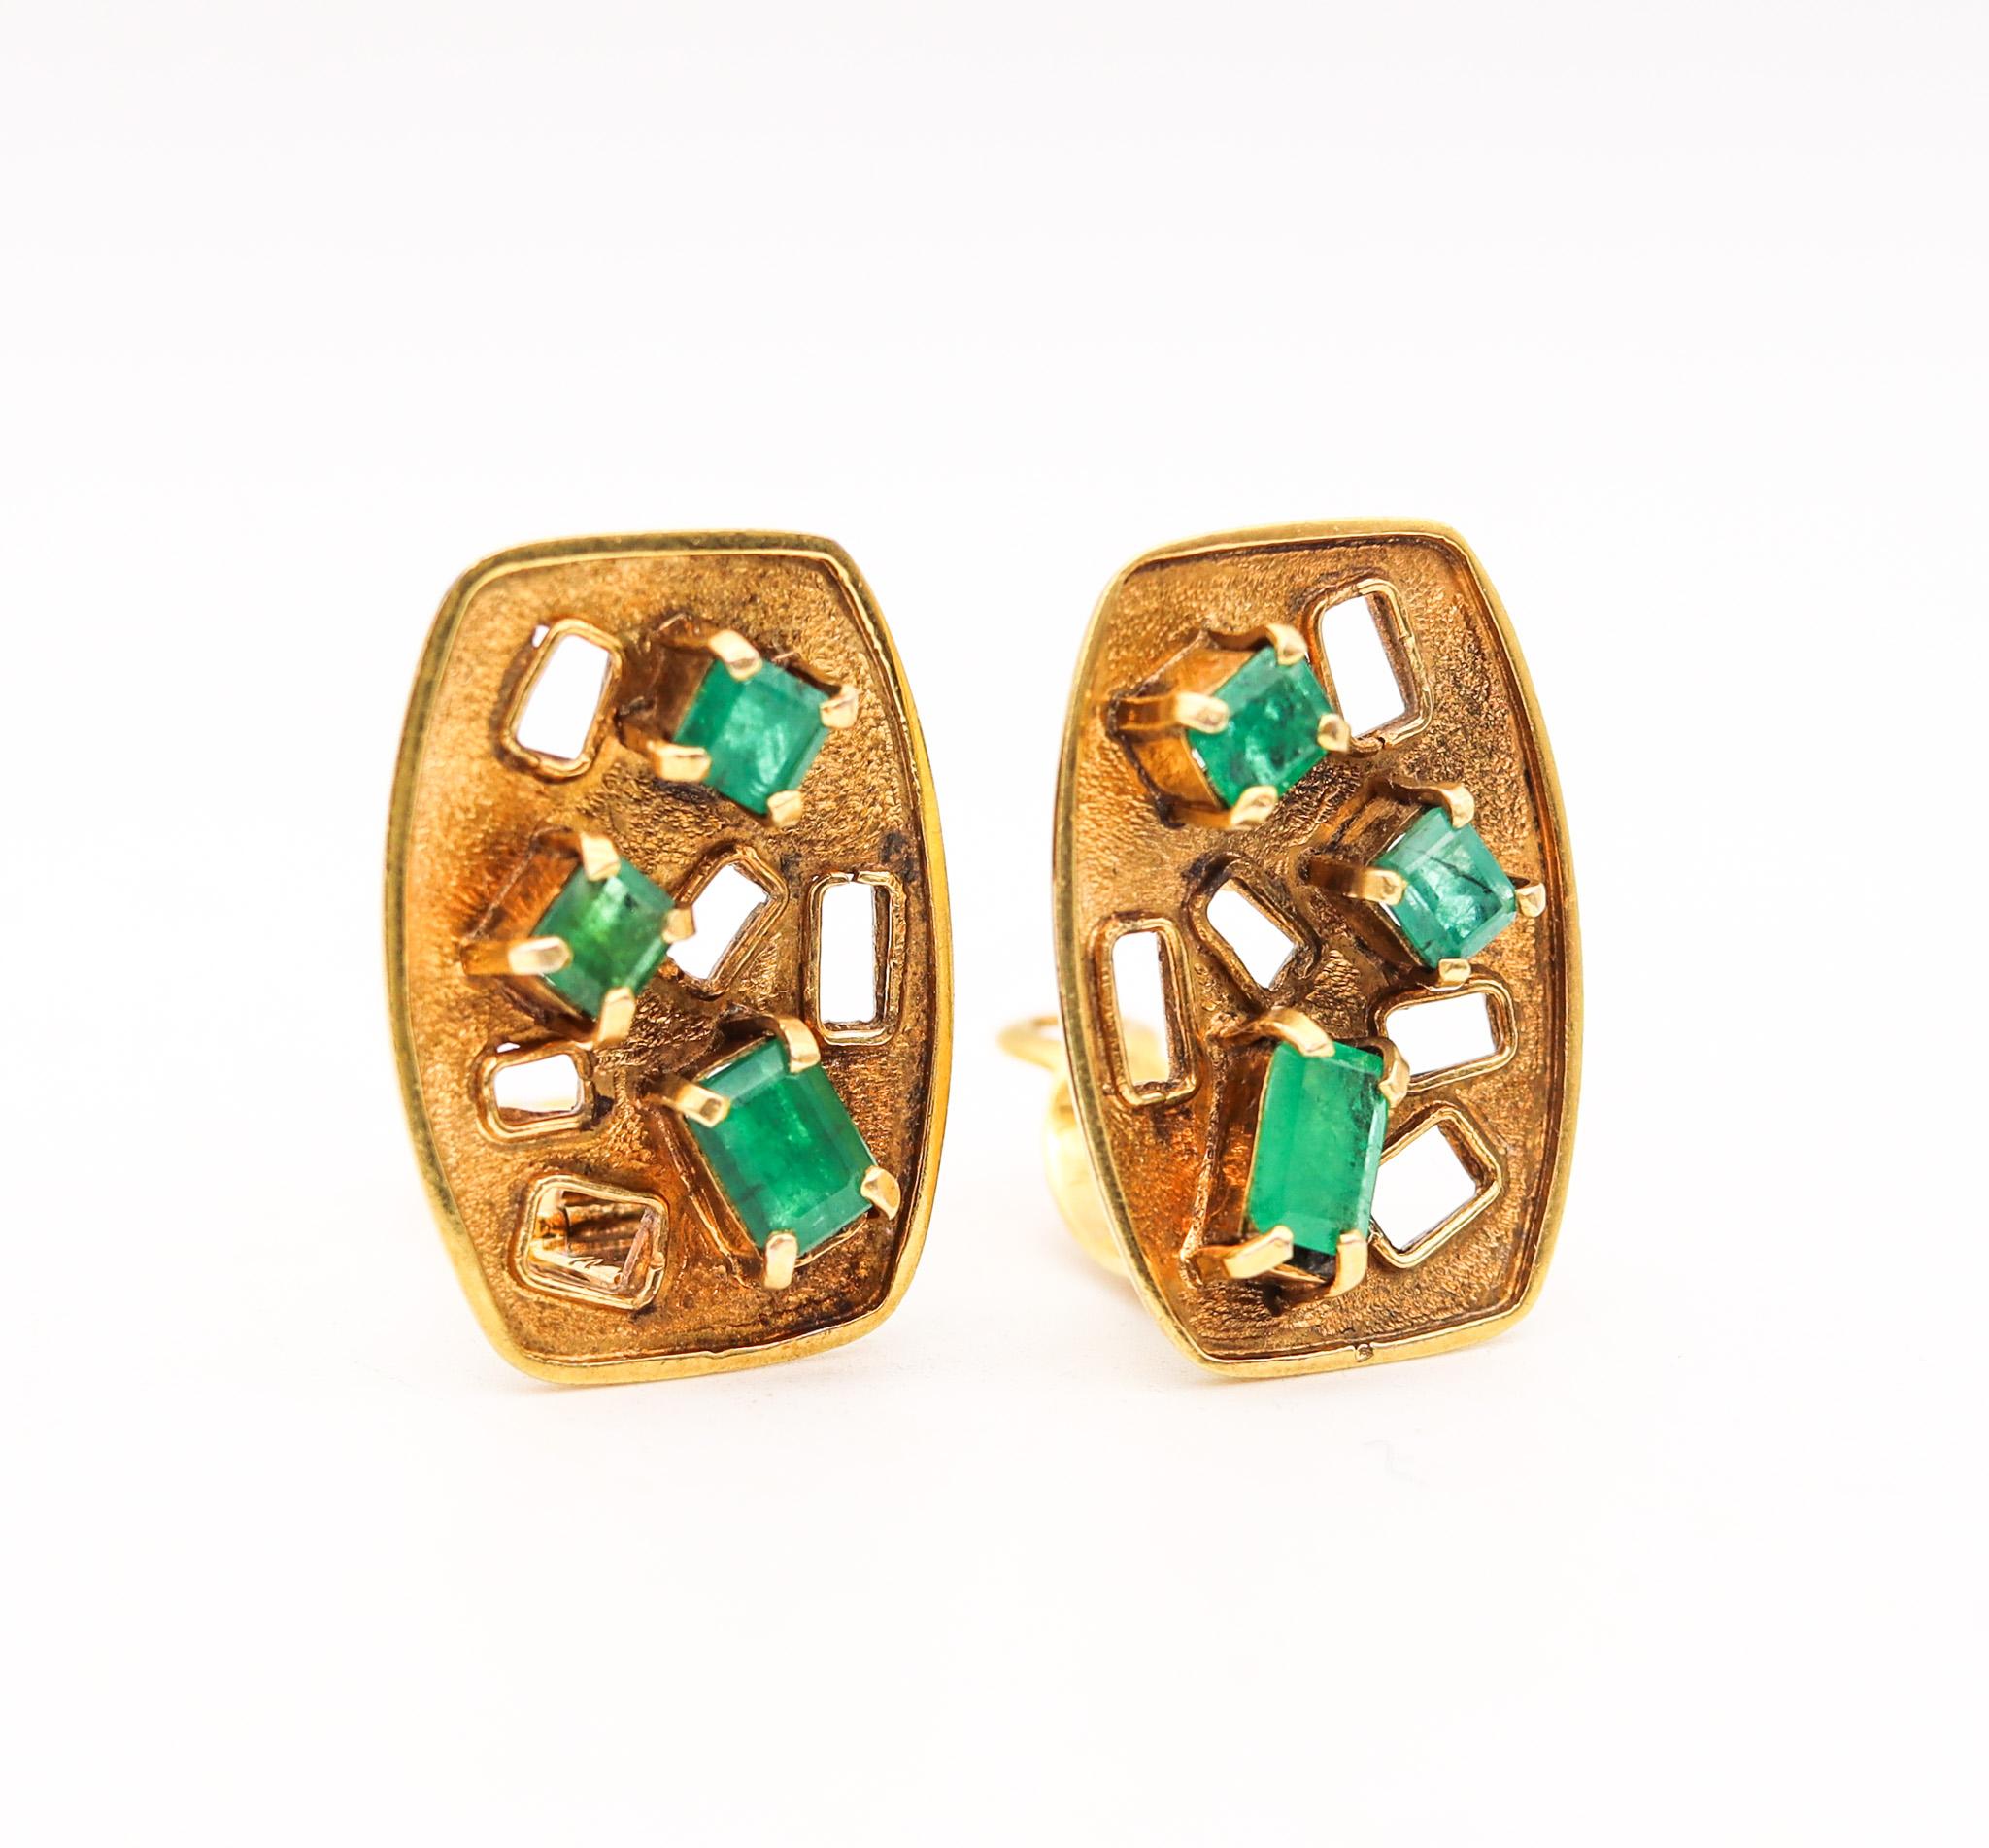 Modernistische Retro-Ohrringe mit Smaragden, entworfen von Bruno Guidi.

Wunderschöne dreidimensionale, tragbare Kunstwerke, die der Designer und Goldschmied Bruno Guidi in den 1970er Jahren in Brasilien entworfen hat. Dieses Paar Ohrringe wurde als